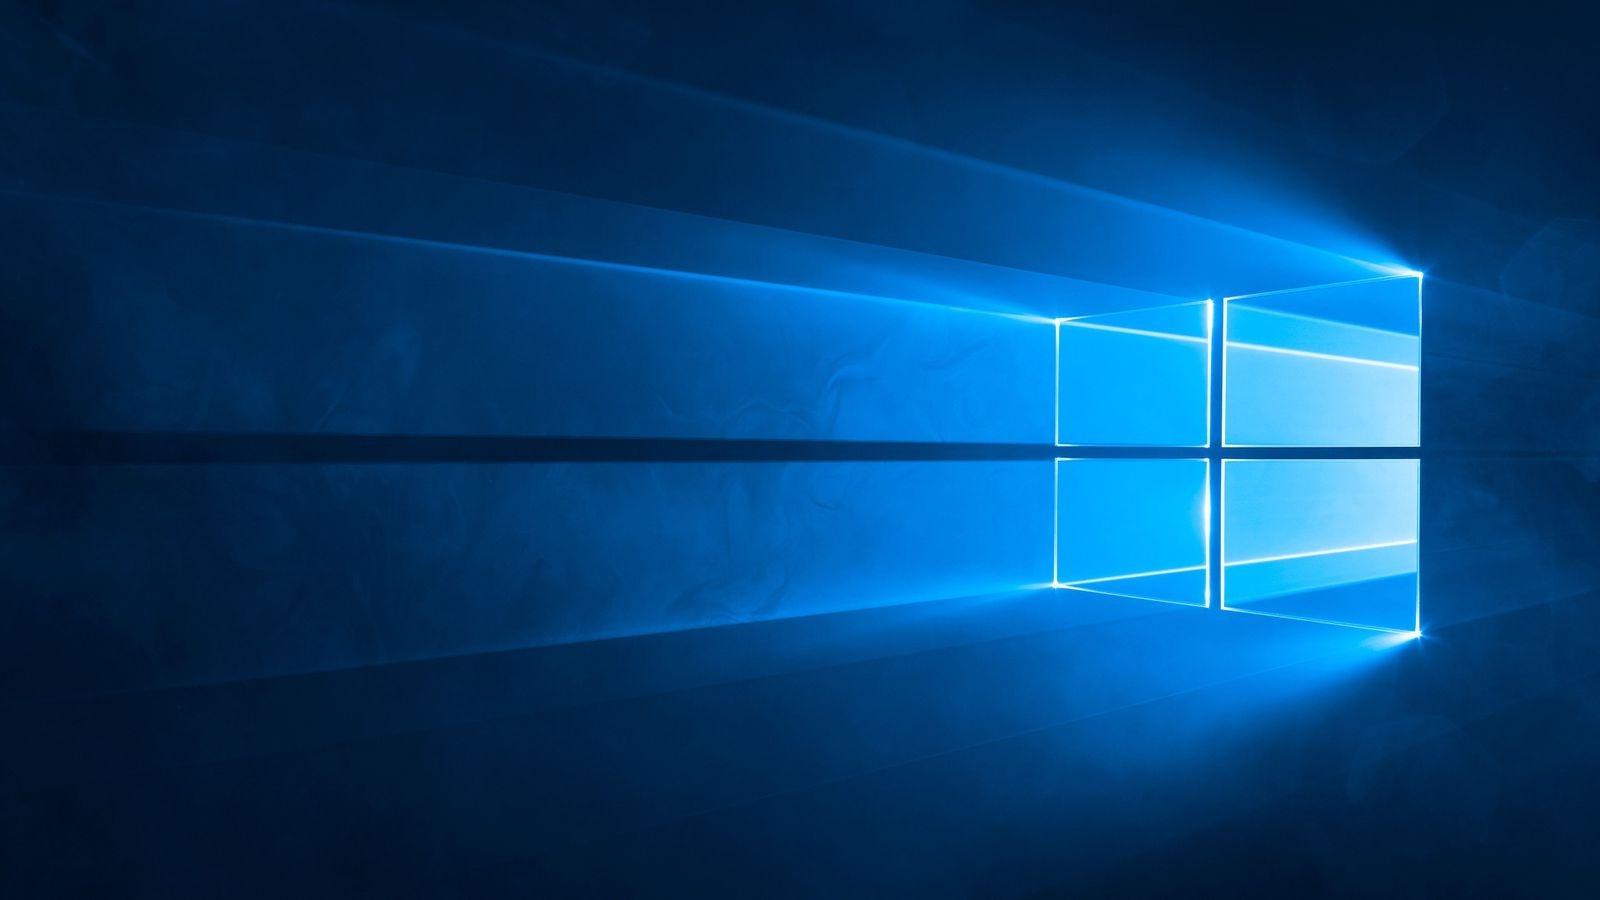 Cómo entrar en el modo seguro de Windows 10 si no arranca